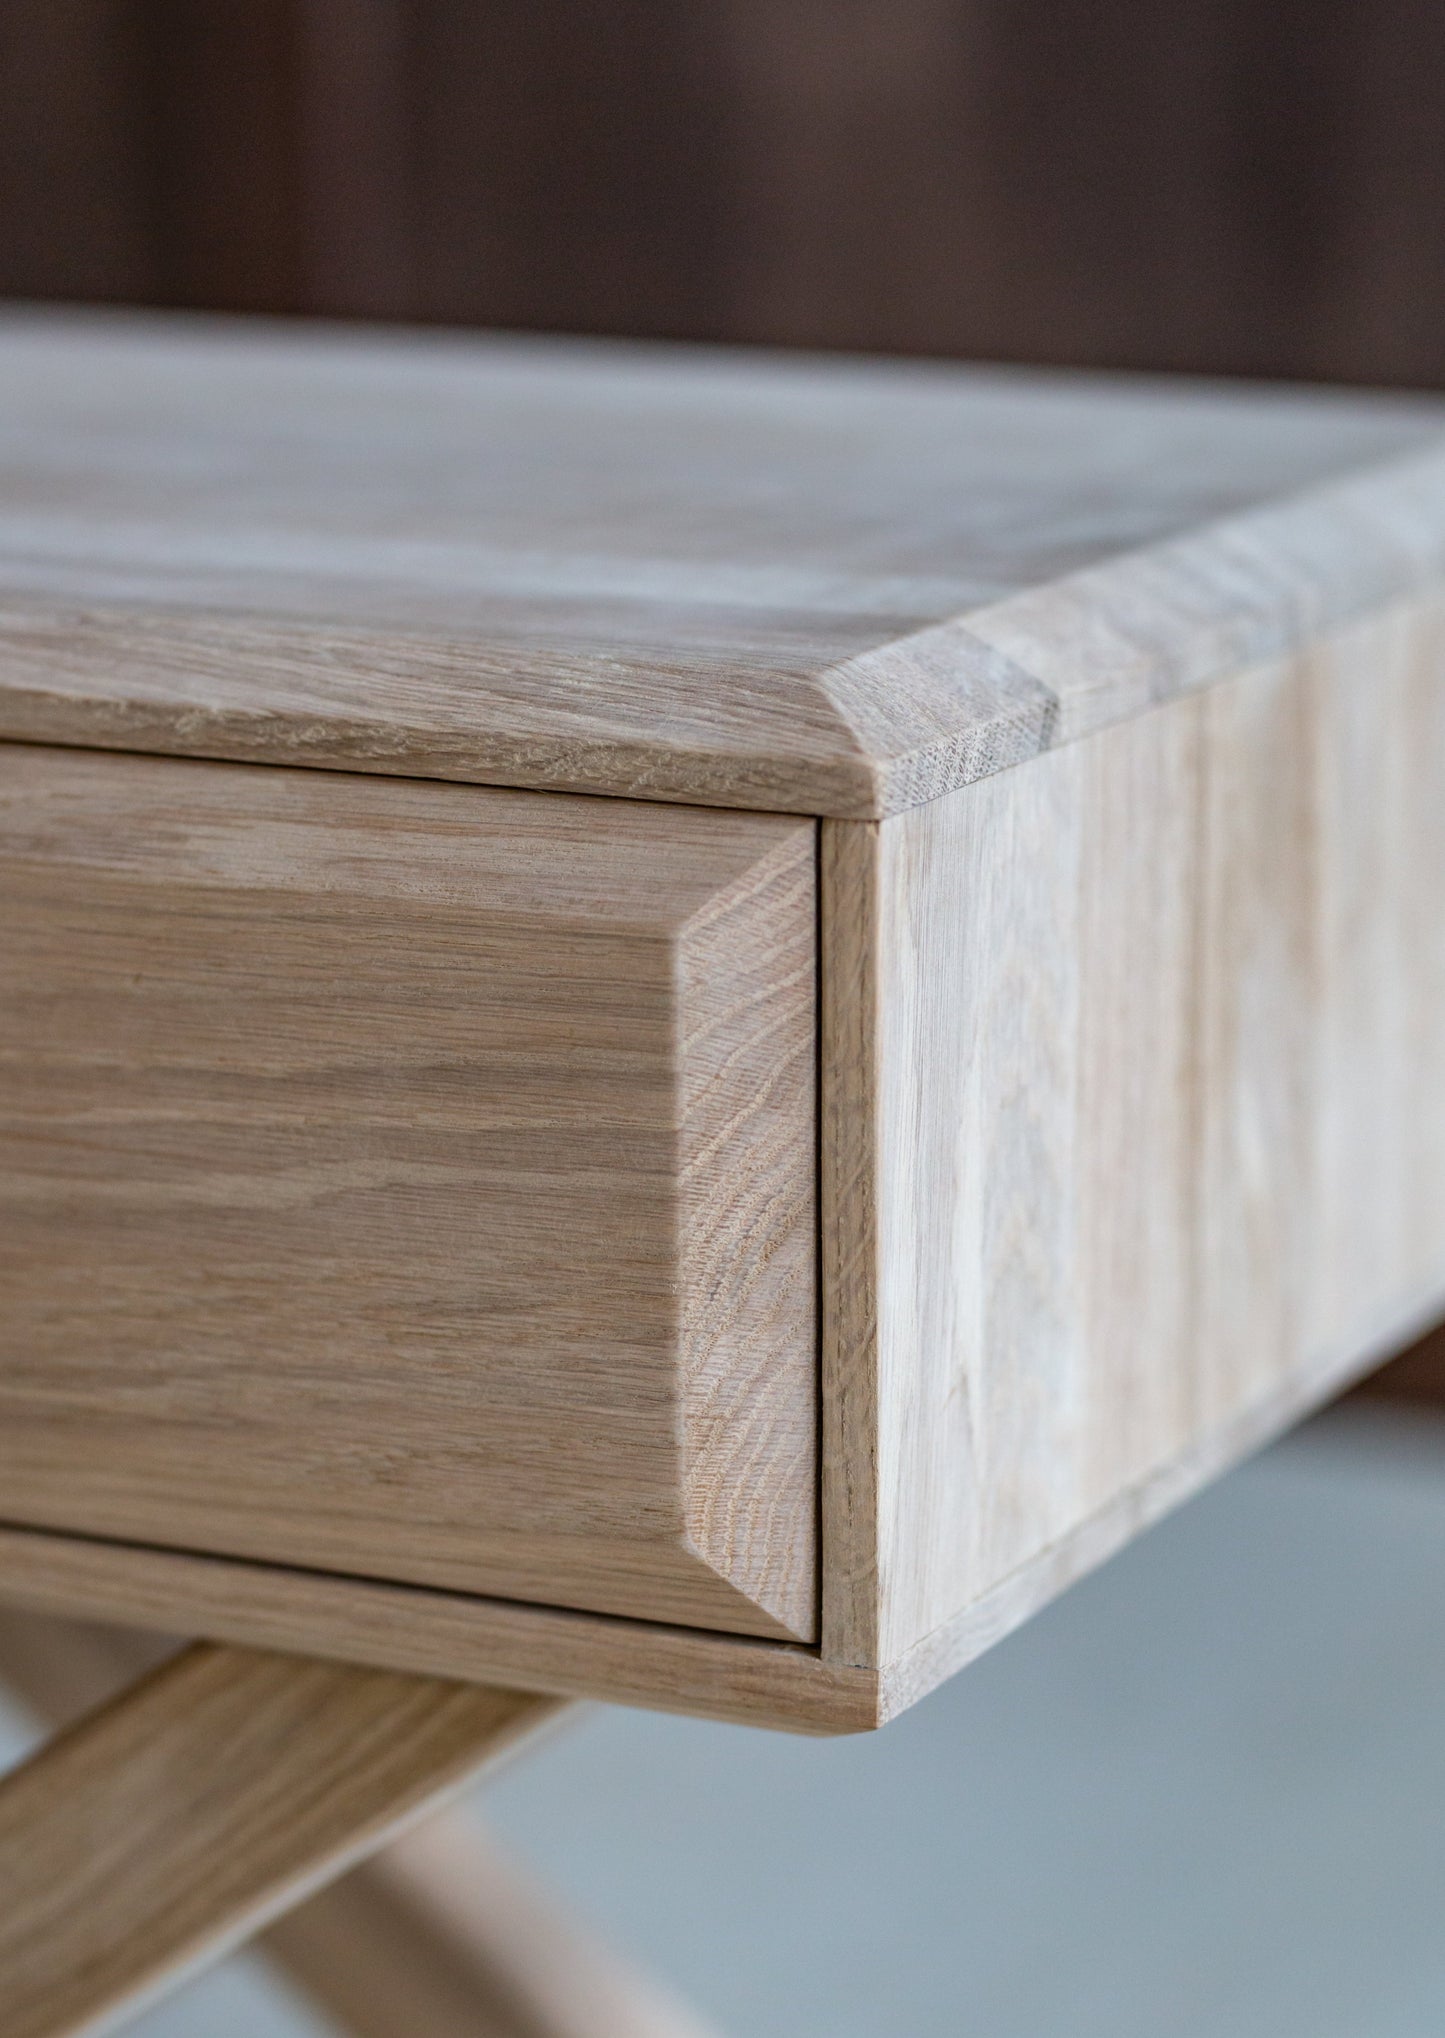 Nattbordet Sande er laget i naturlig, lys eik, med en glatt bearbeidet overflate. X-formede bein gir en elegant og moderne følelse. Dette bordet vil passe perfekt på soverom eller som sidebord.